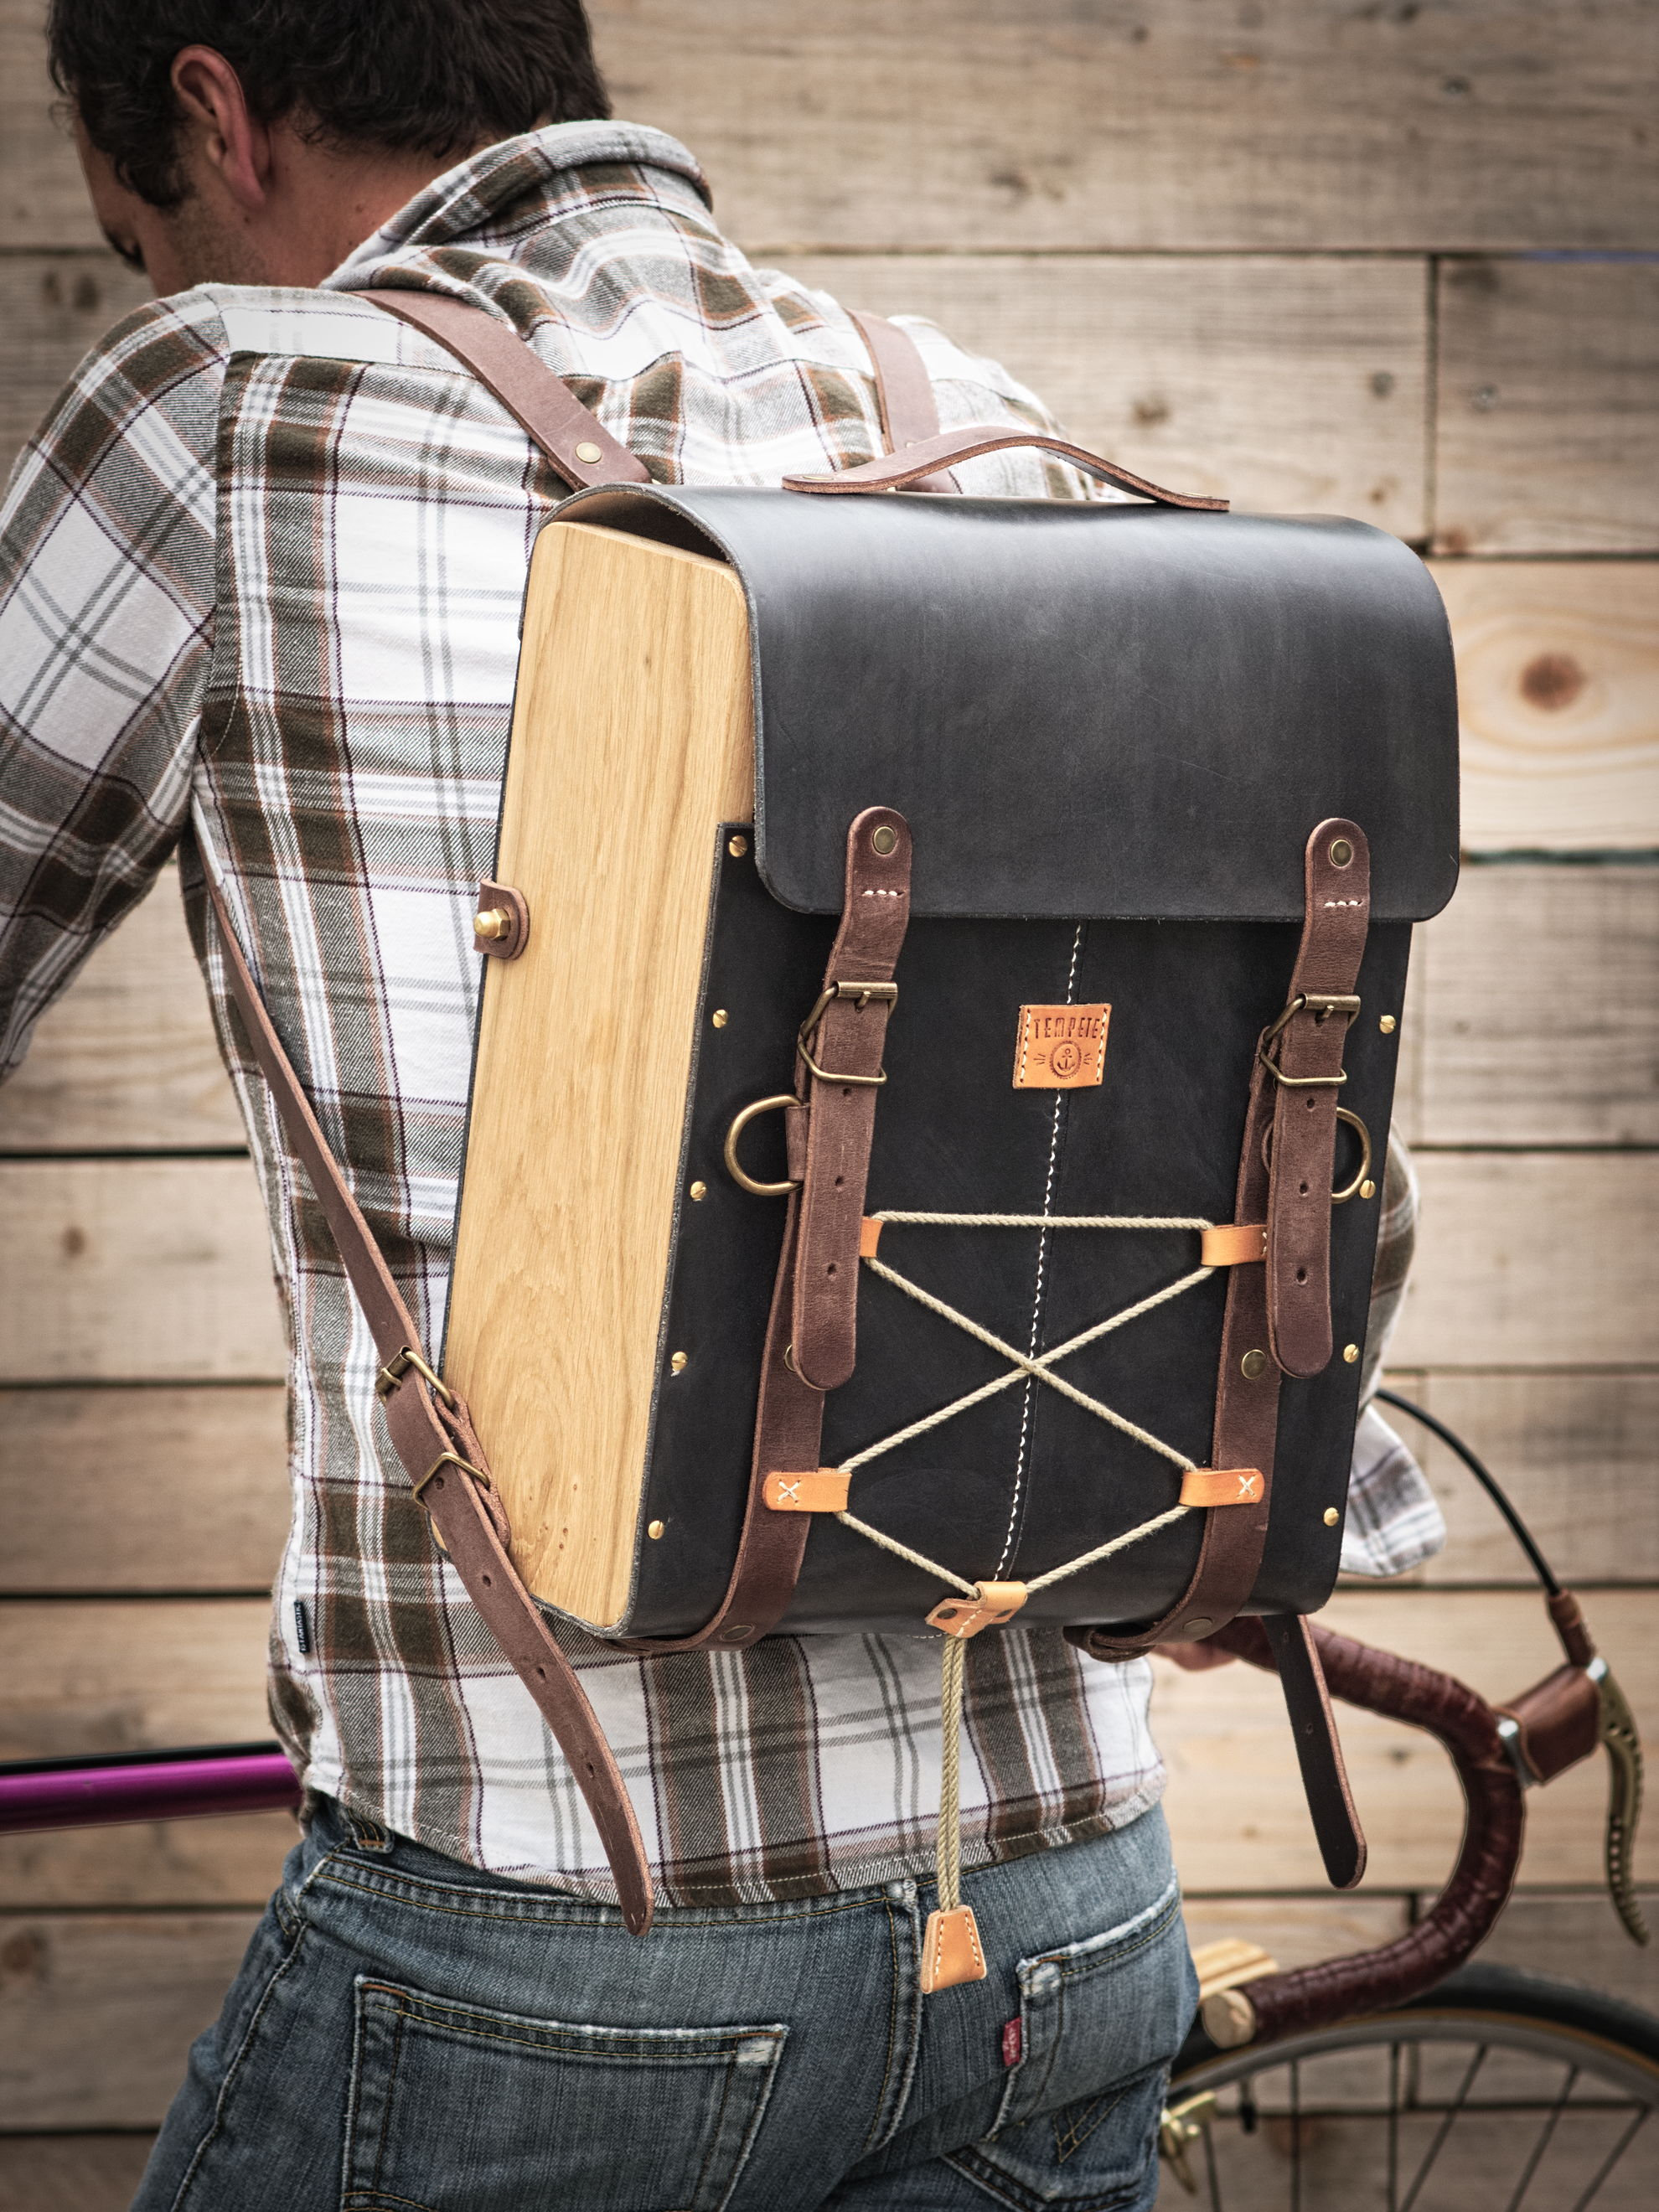 Le Backpack - Sac à dos cuir et bois - Miel, chocolat ou noir vintage